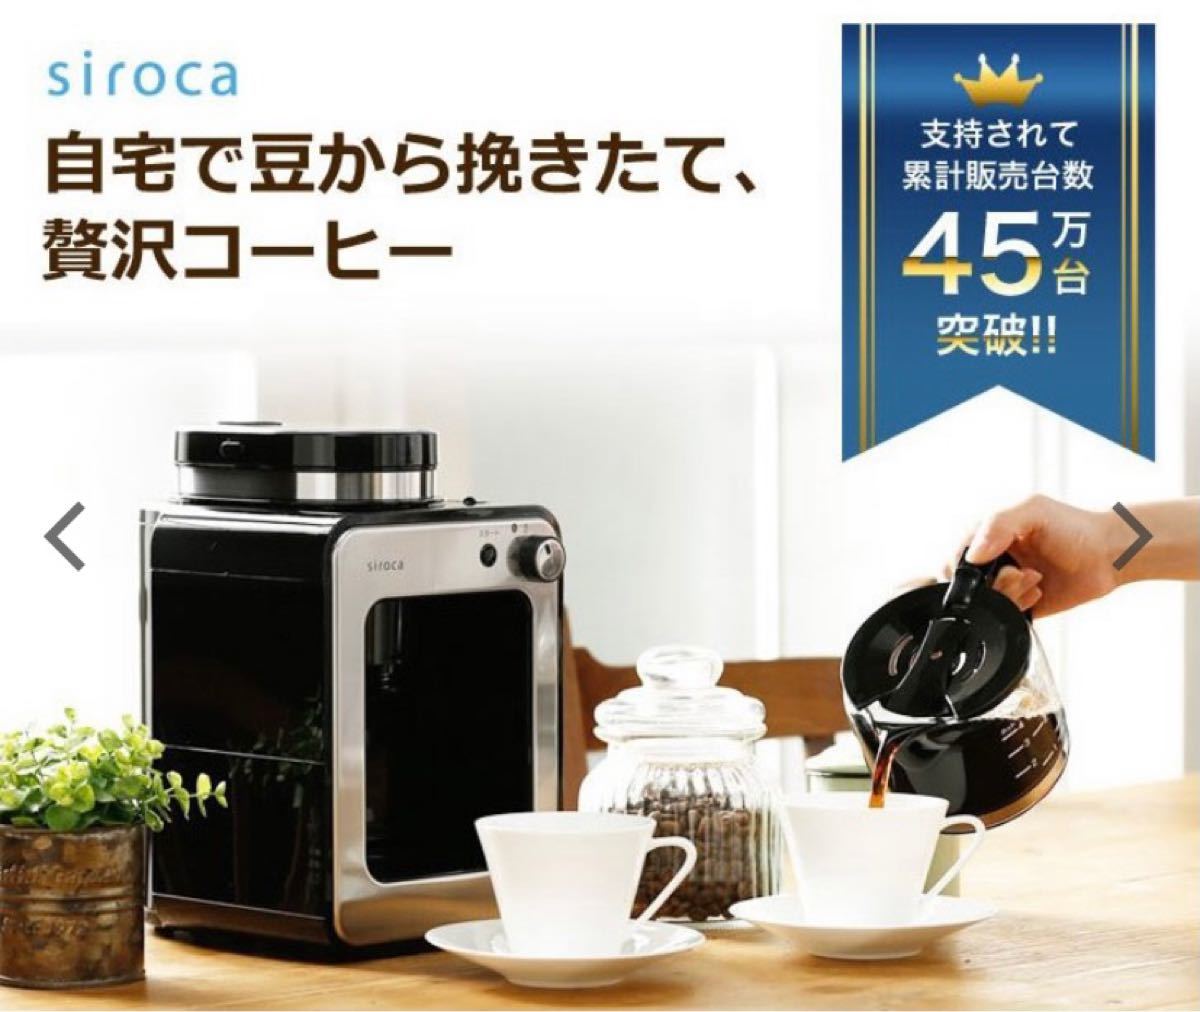 【新品未使用】siroca シロカ 全自動コーヒーメーカー A211 ブラック×ステンレス